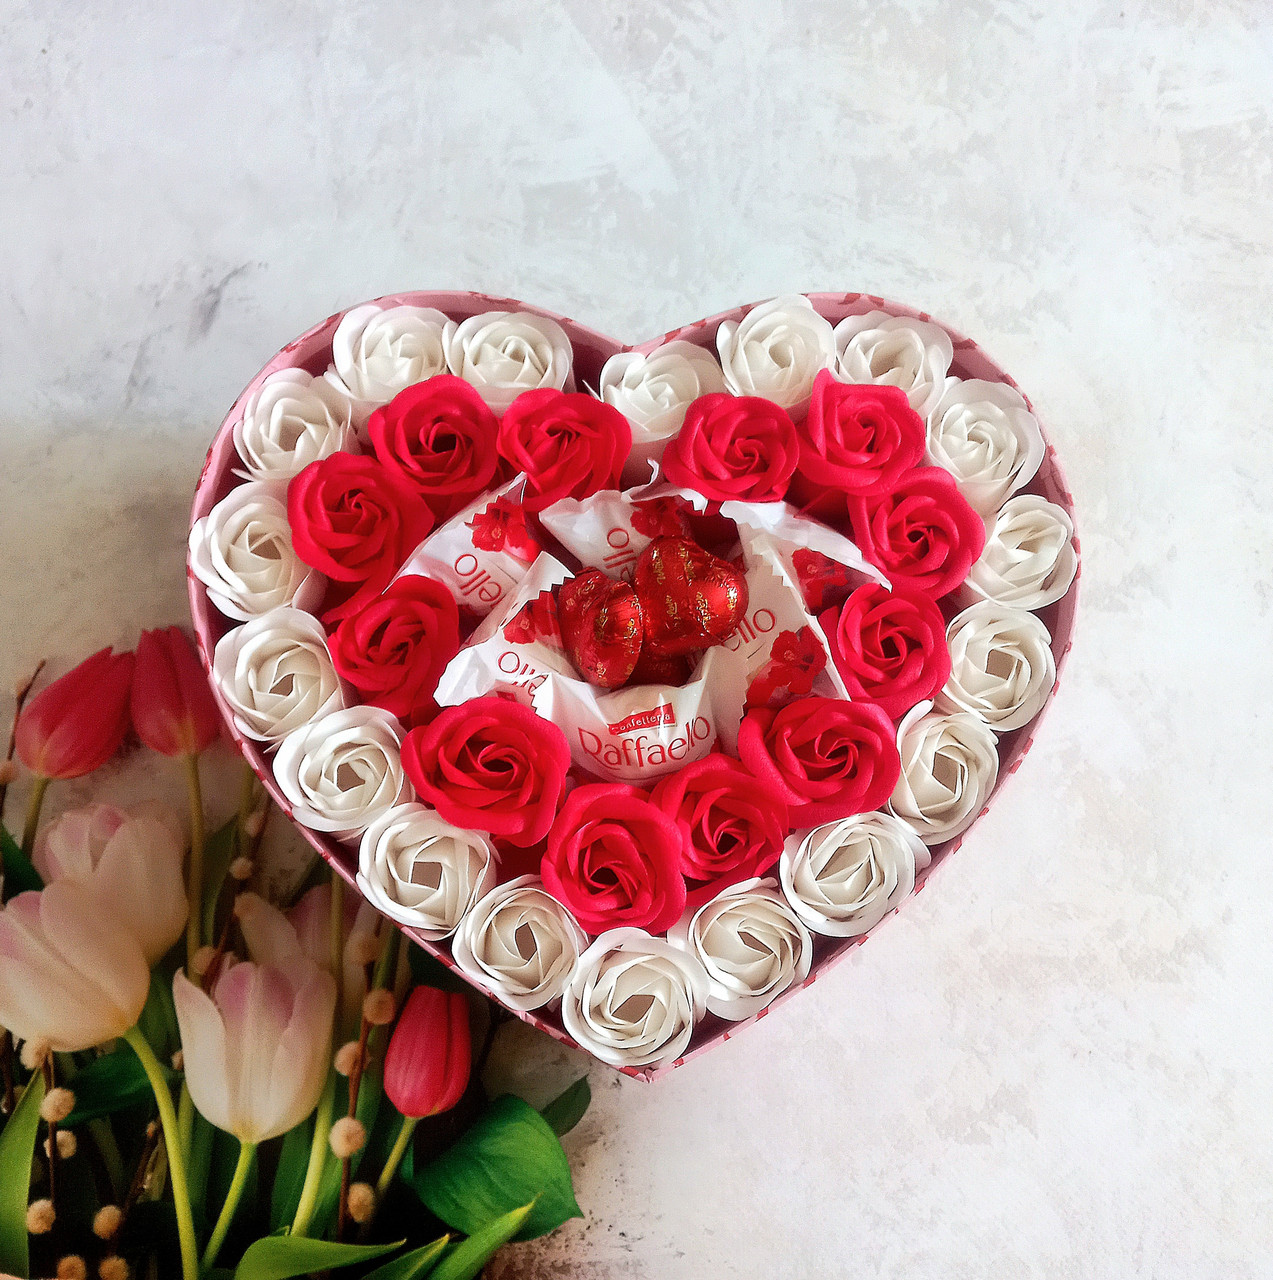 Подарунковий набір з мильних троянд і Raffaello в коробці серце. Подарунок дівчині, мамі, сестрі, дружині на 8 березня.